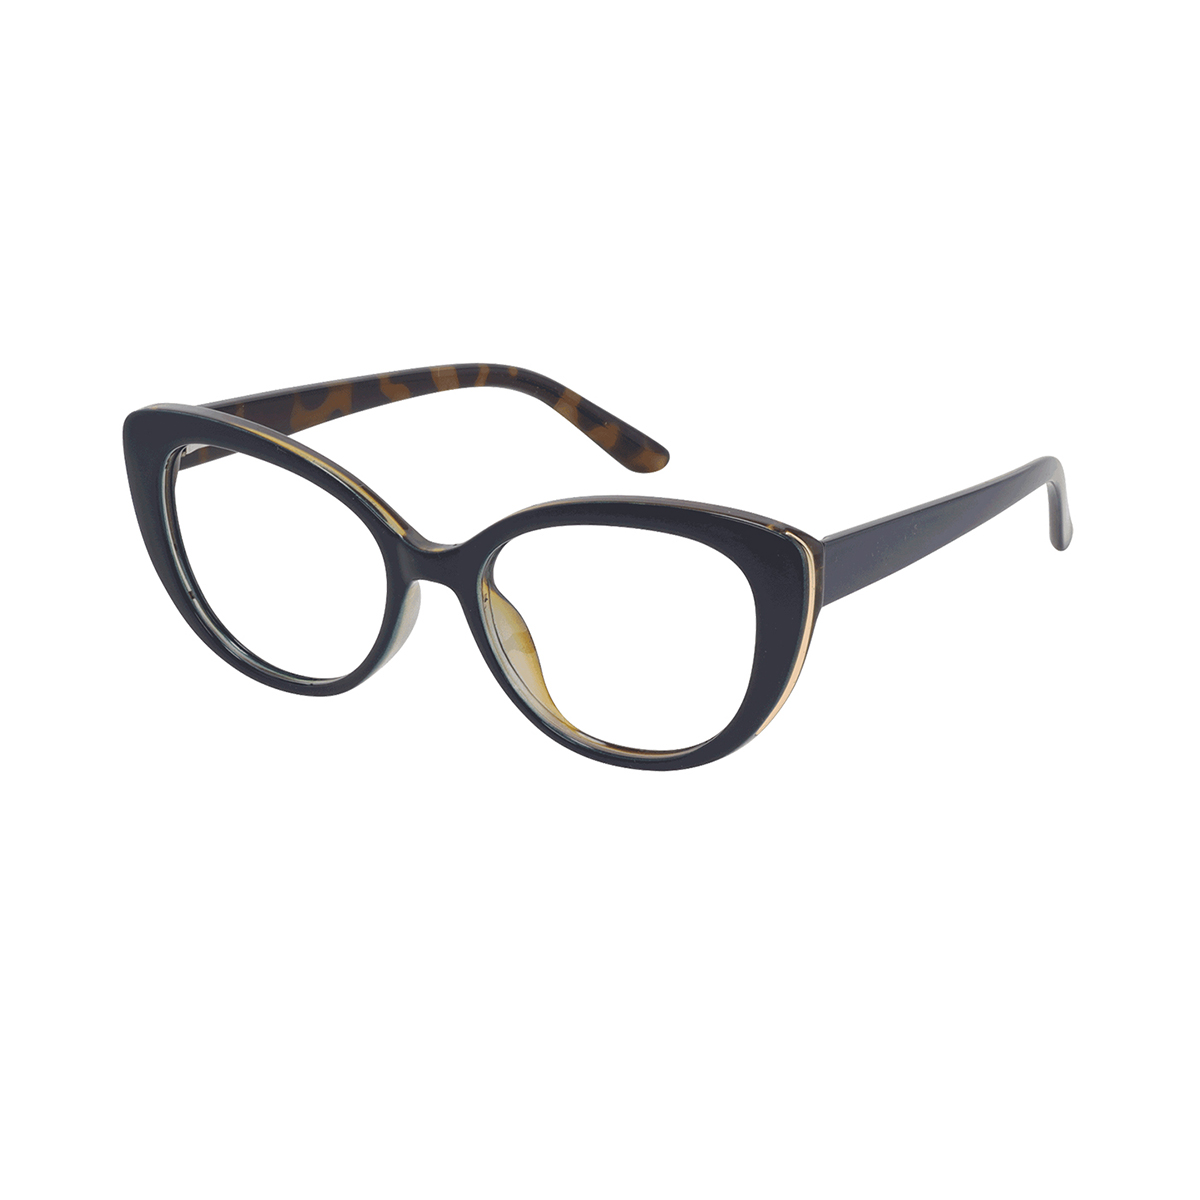 Eleusis - Cat-eye Black Reading Glasses for Women